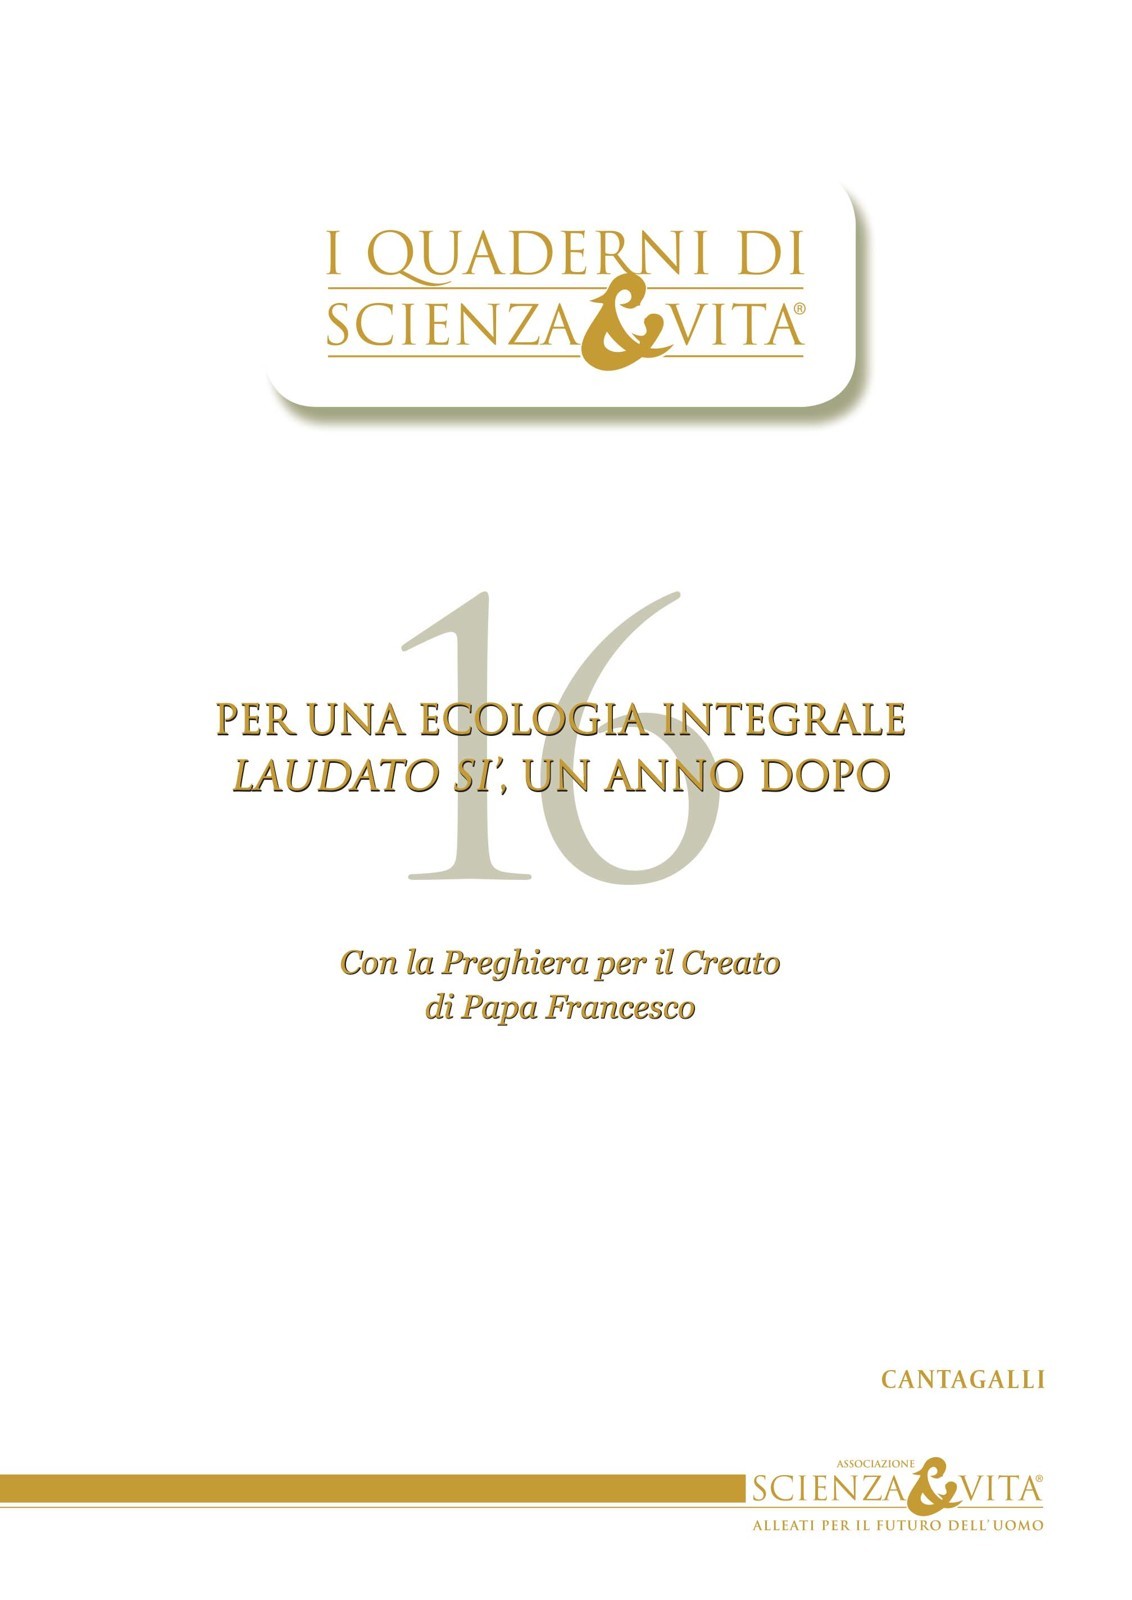 I Quaderni di Scienza & Vita 16 - Librerie.coop